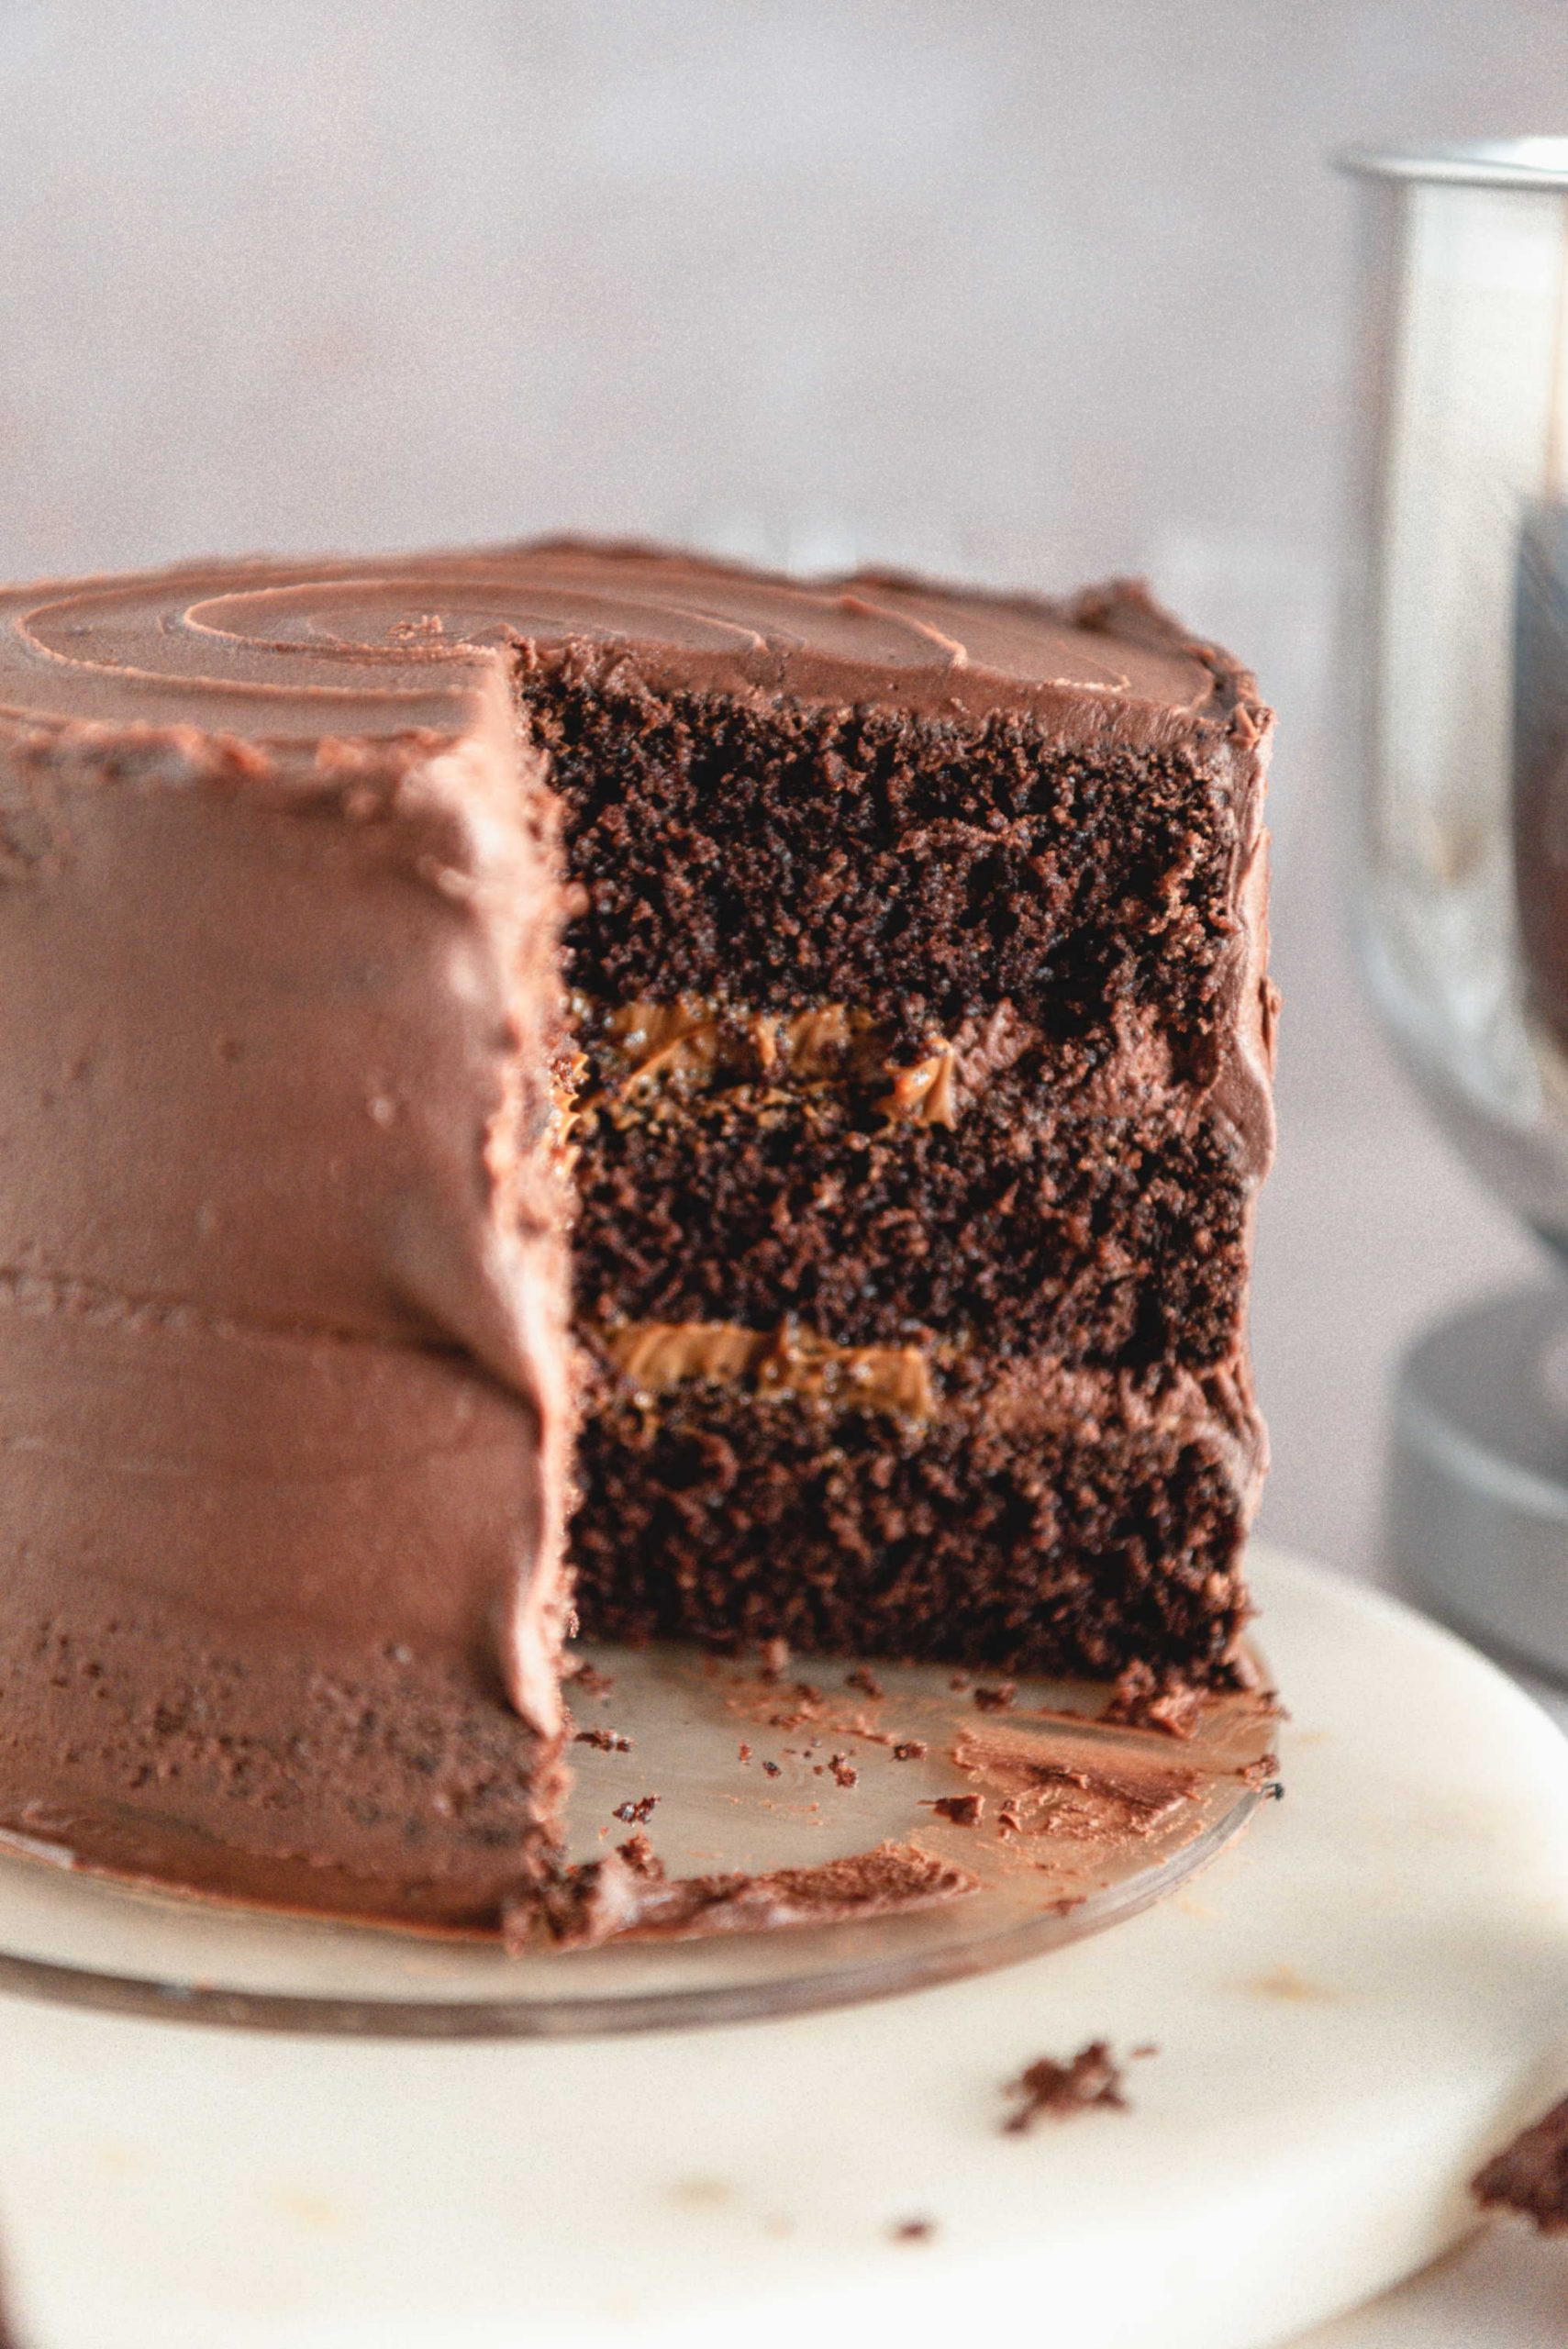 Dan torte proslavite uz sočnu fudge tortu ispunjenu karamelom i čokoladom!